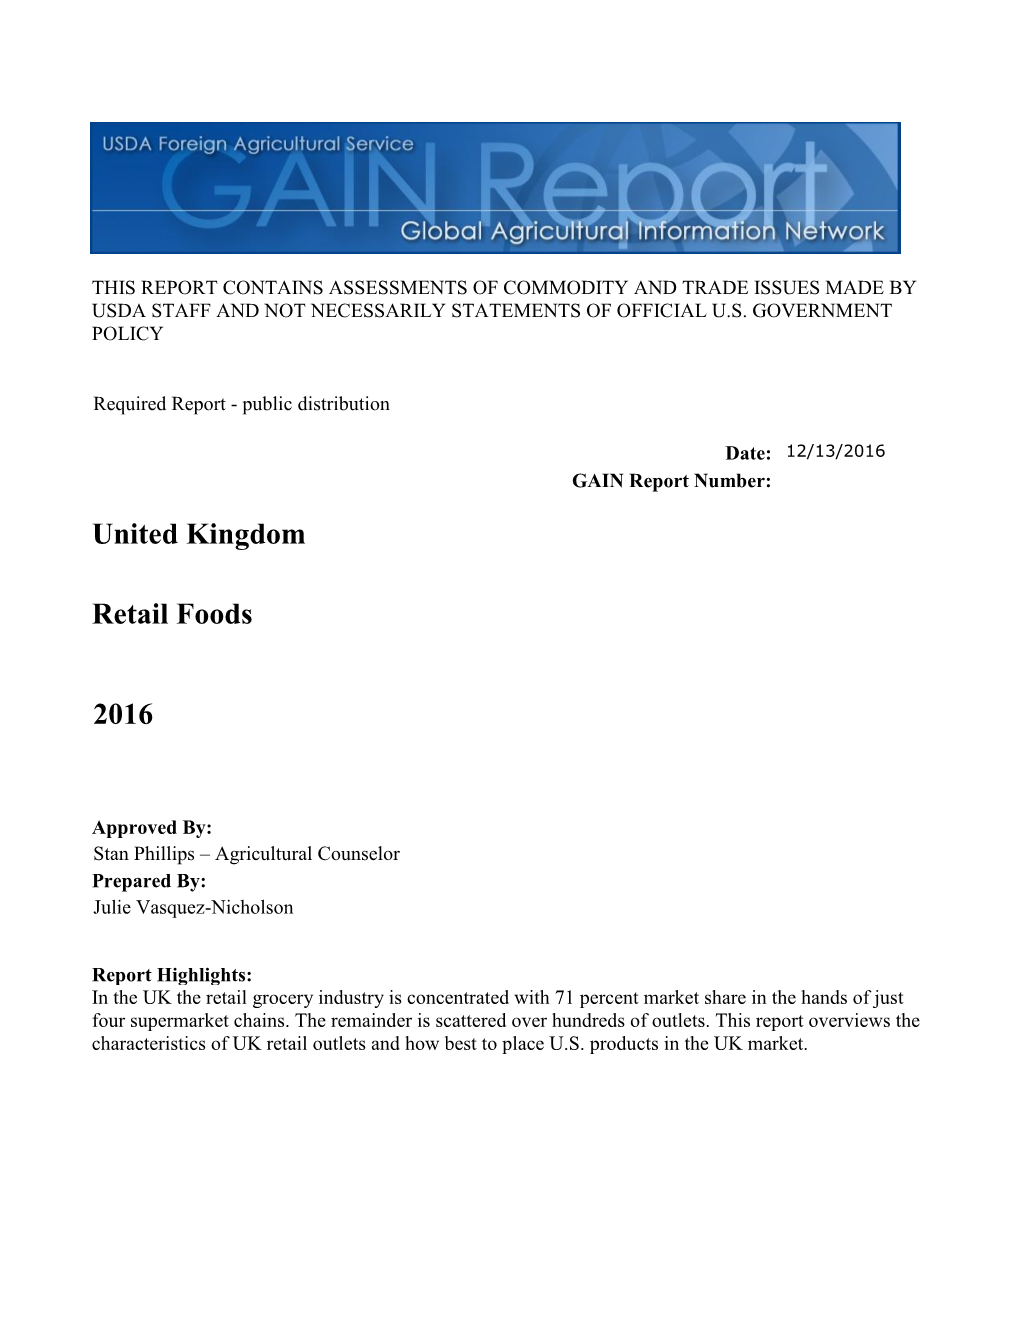 2016 Retail Foods United Kingdom